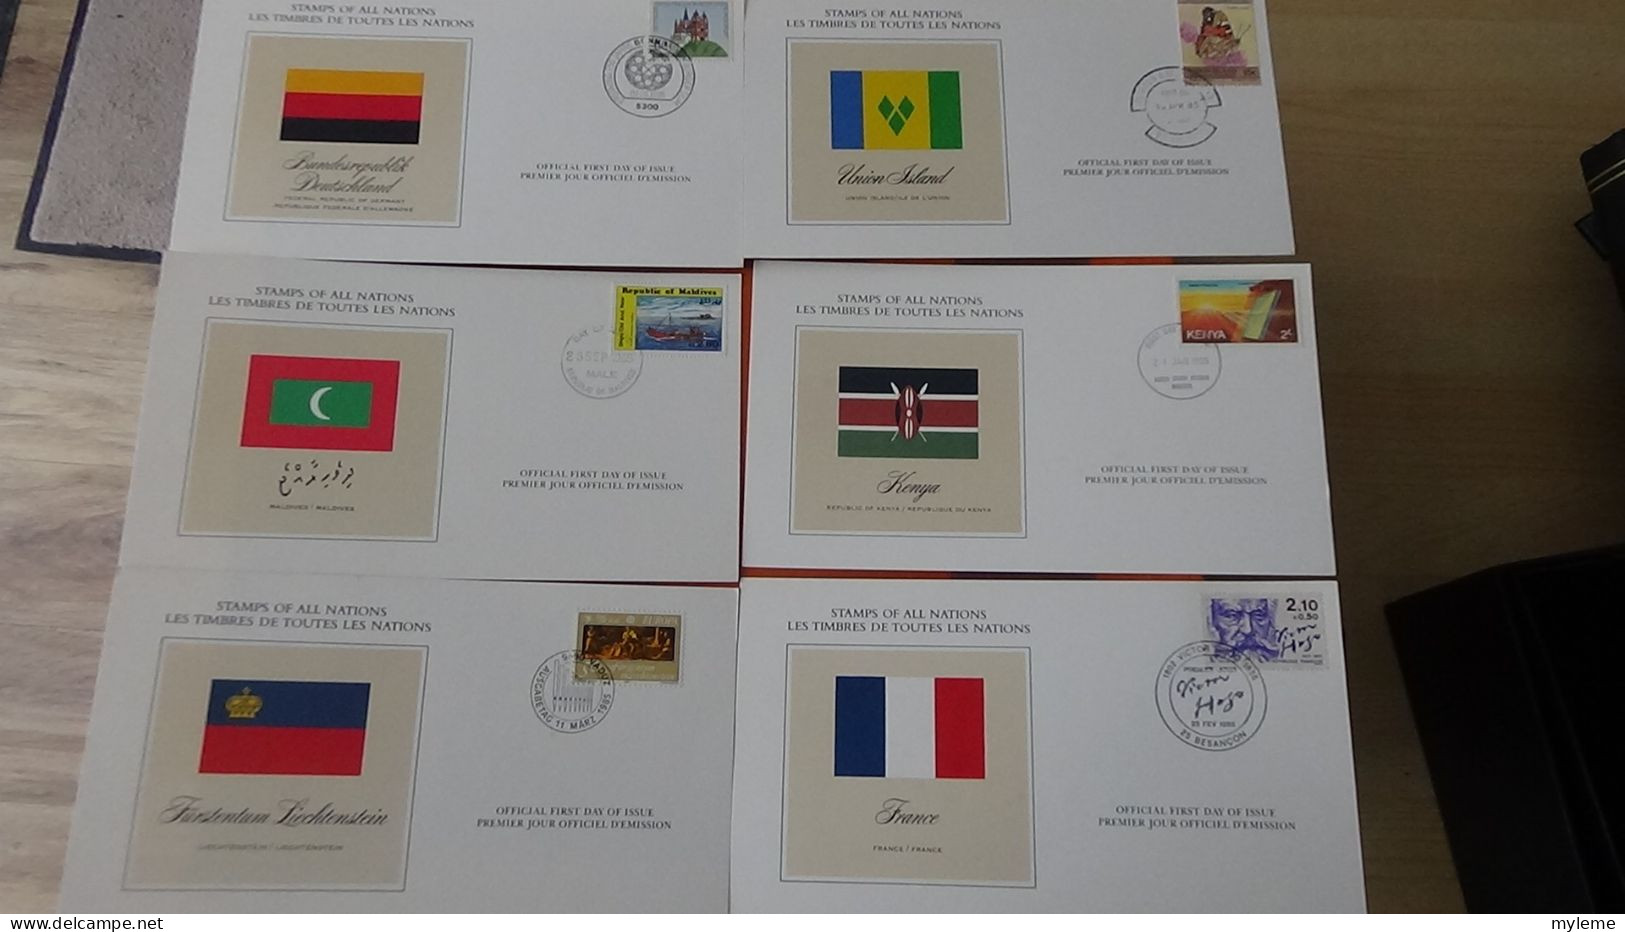 BF72 Bel ensemble de documents avec timbres ** sur les animaux, véhicules et drapeaux + coffret A saisir !!!